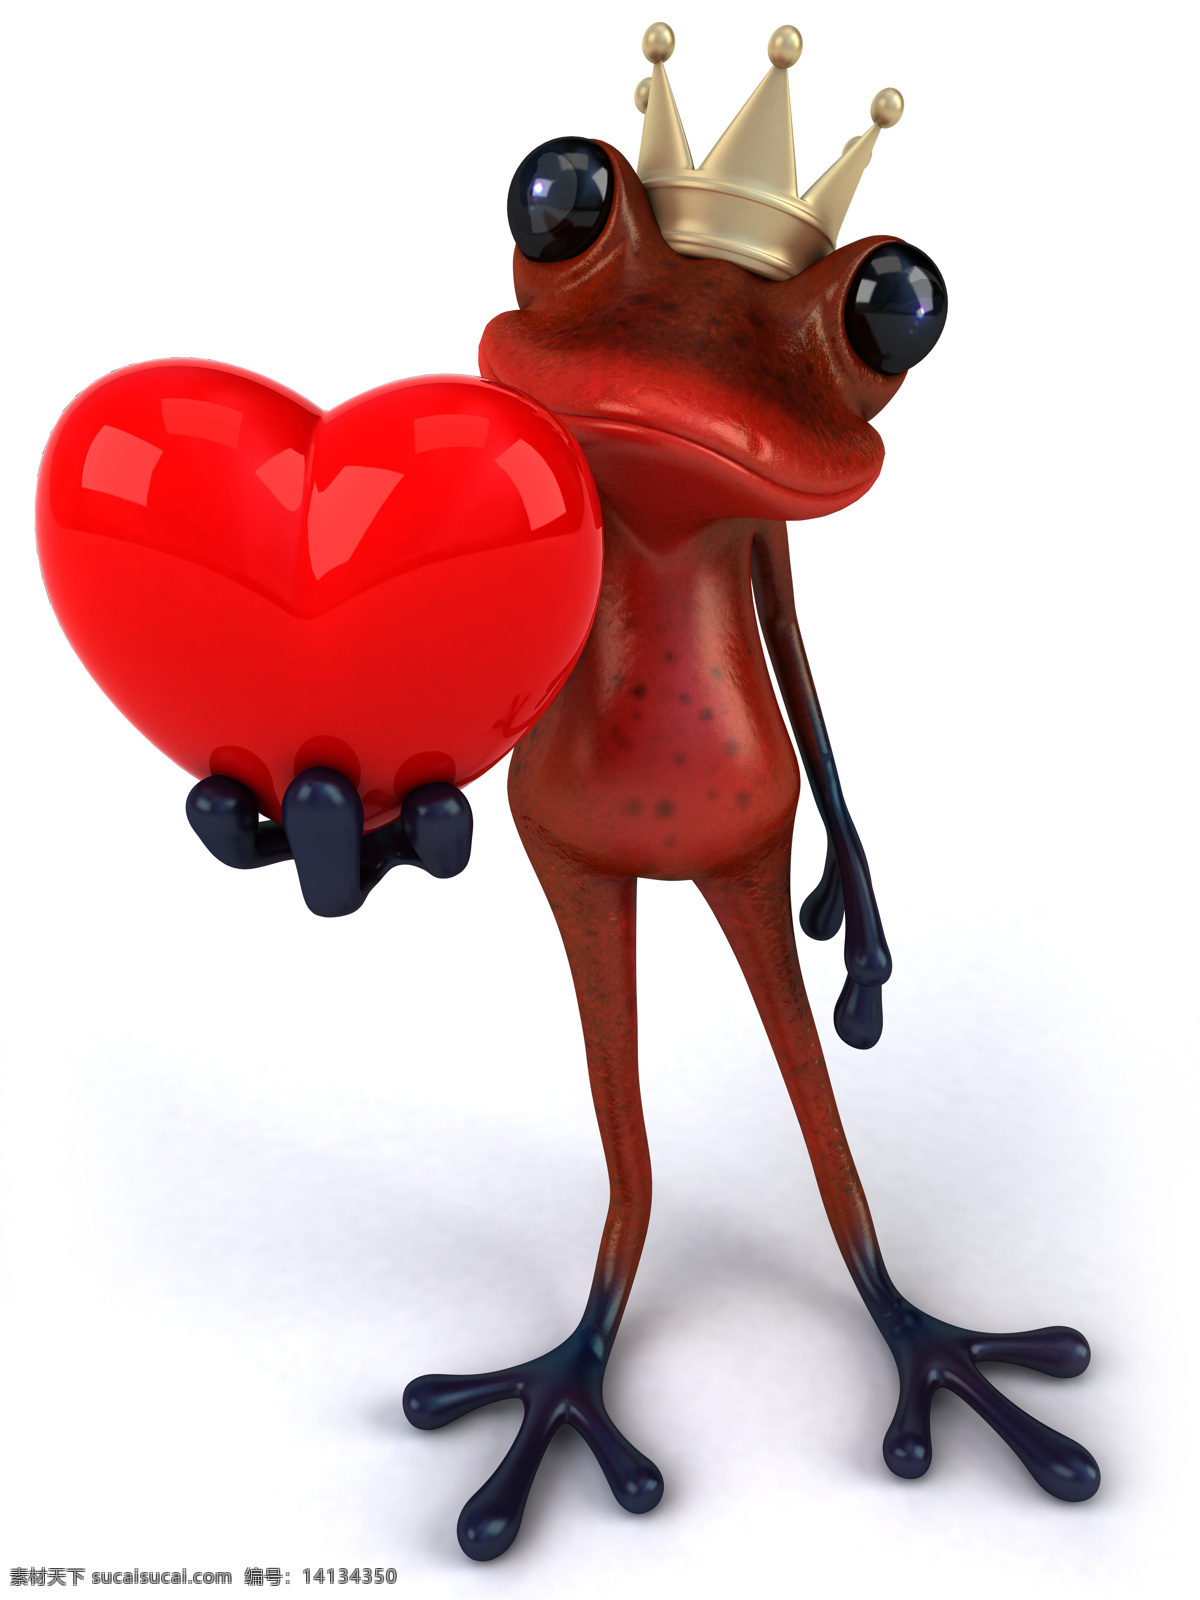 3d设计 爱情 爱心 红心 皇冠 青蛙 情人节 3d青蛙 心形 王冠 示爱 野生动物 生物世界 3d模型素材 其他3d模型